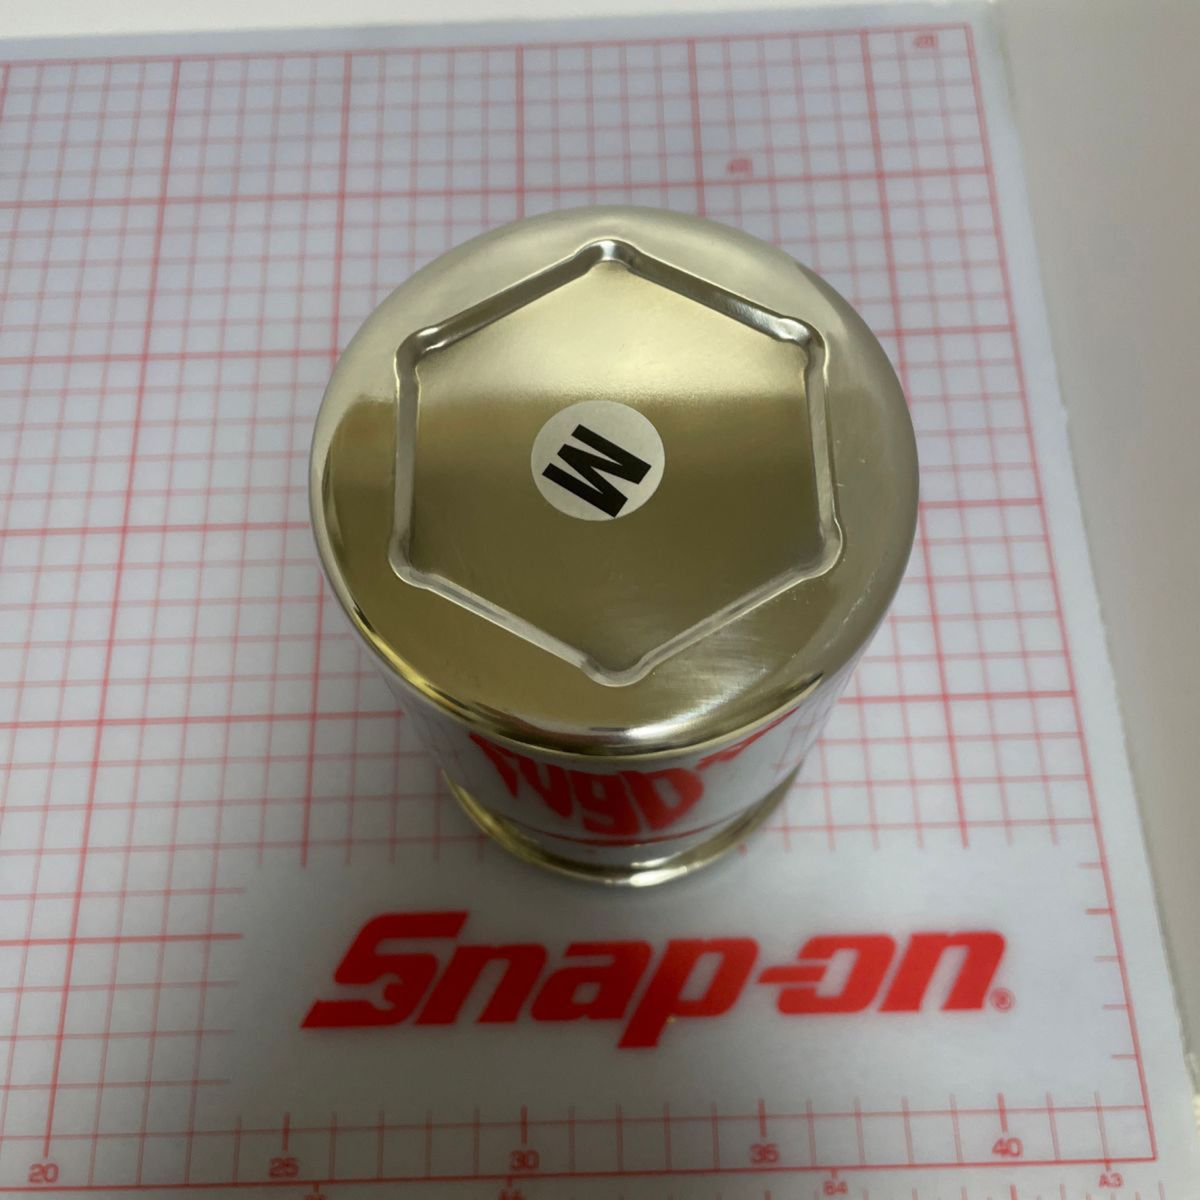 Snap-on☆ソケット型スチール缶入りグローブ